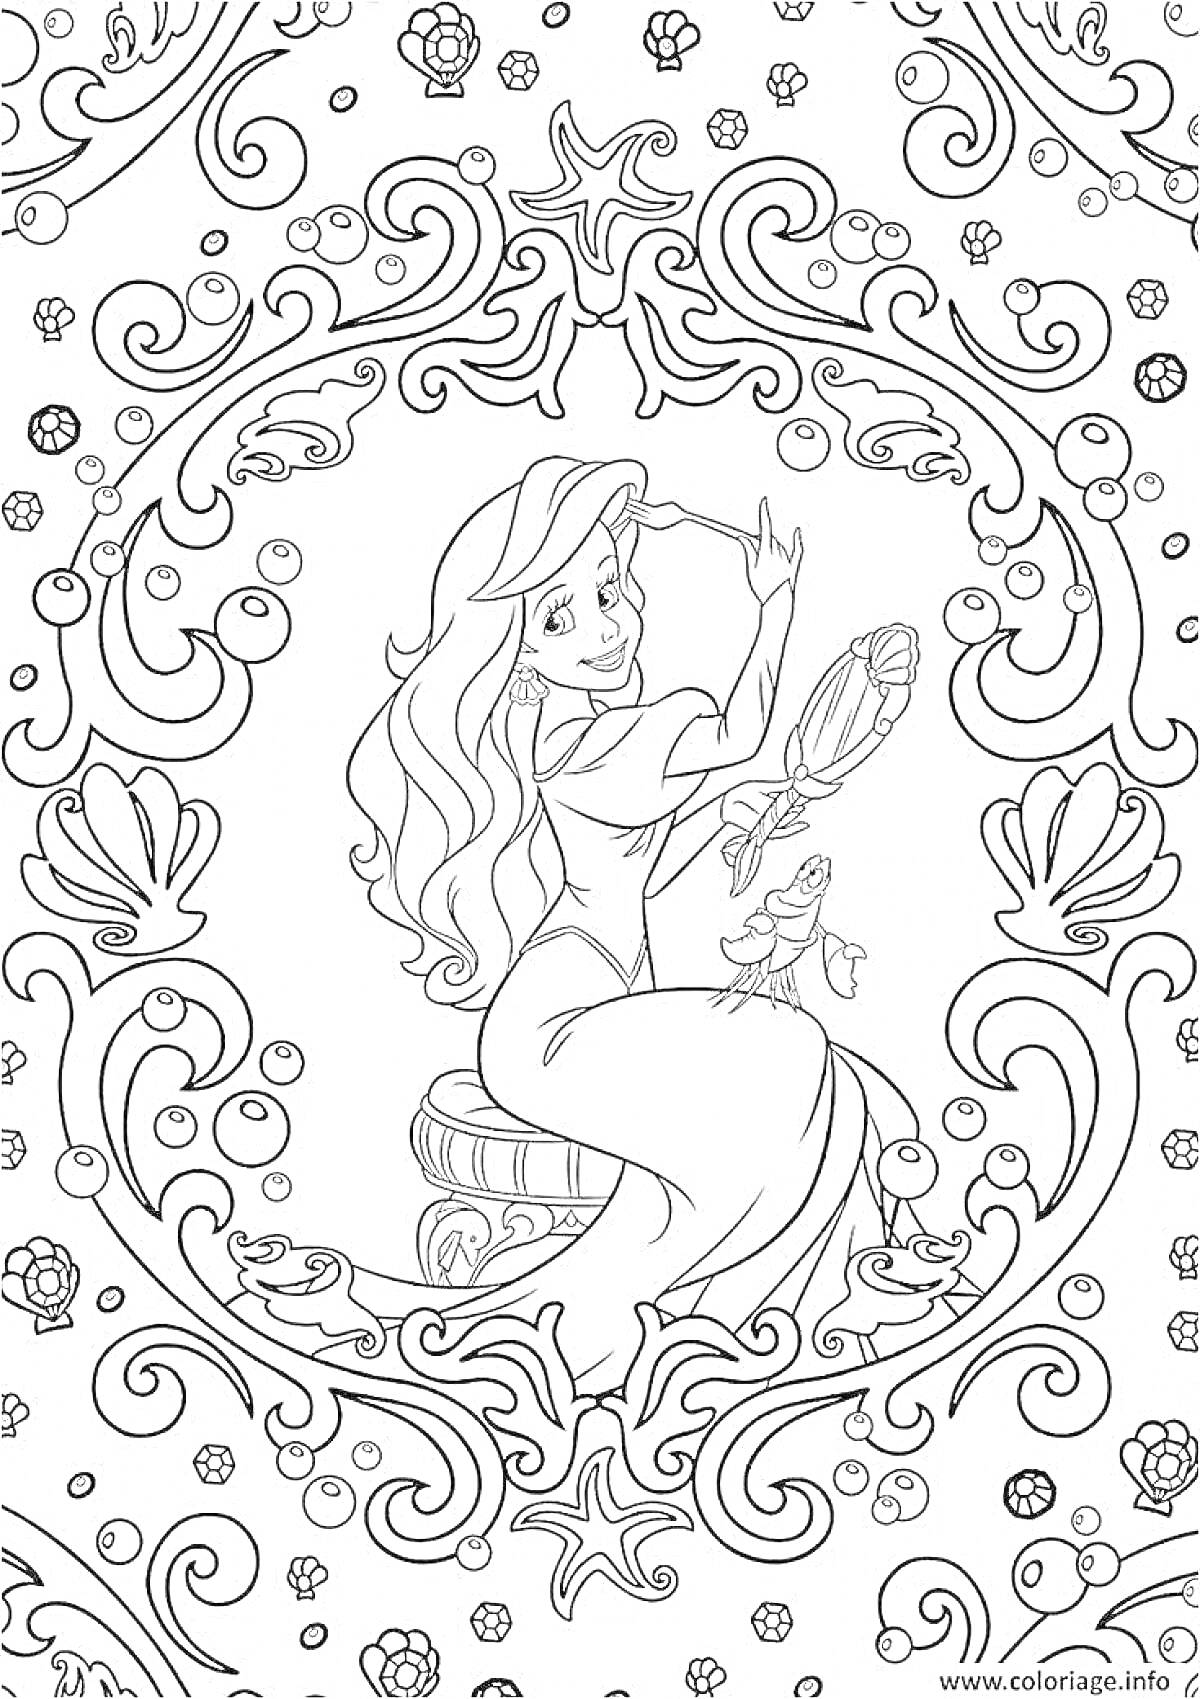 Раскраска Девушка с зеркалом и ракушкой в окружении узоров, цветов и завитков